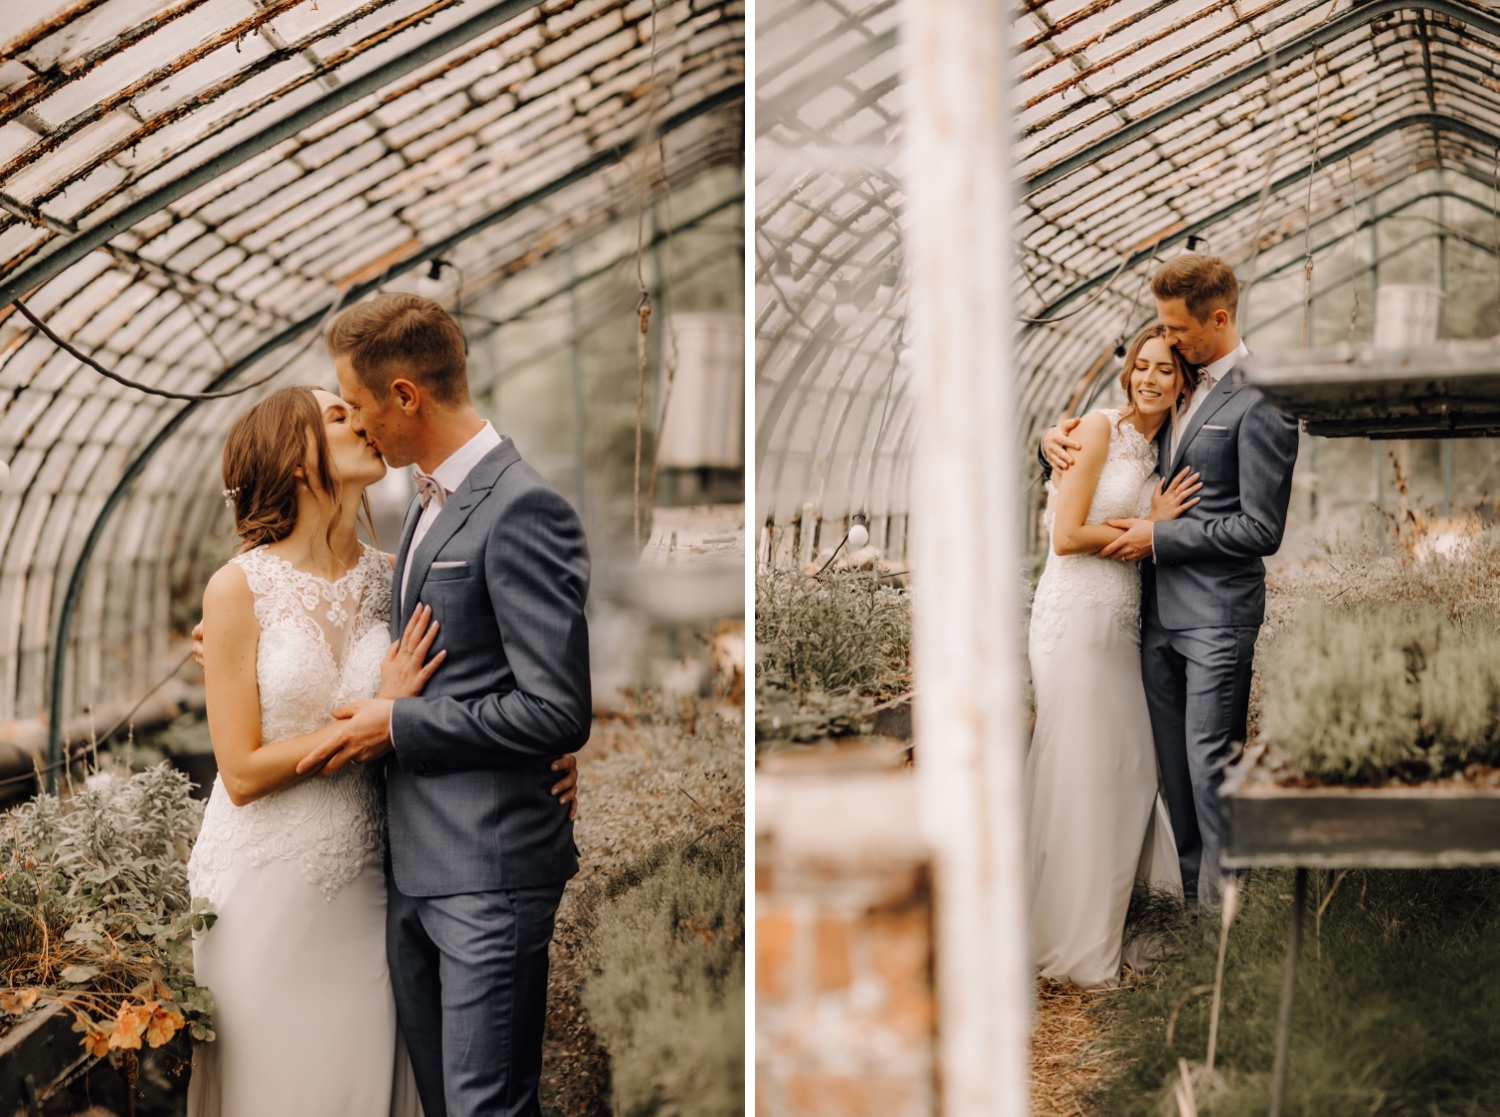 Huwelijksfotograaf limburg - bruidspaar poseert in serre